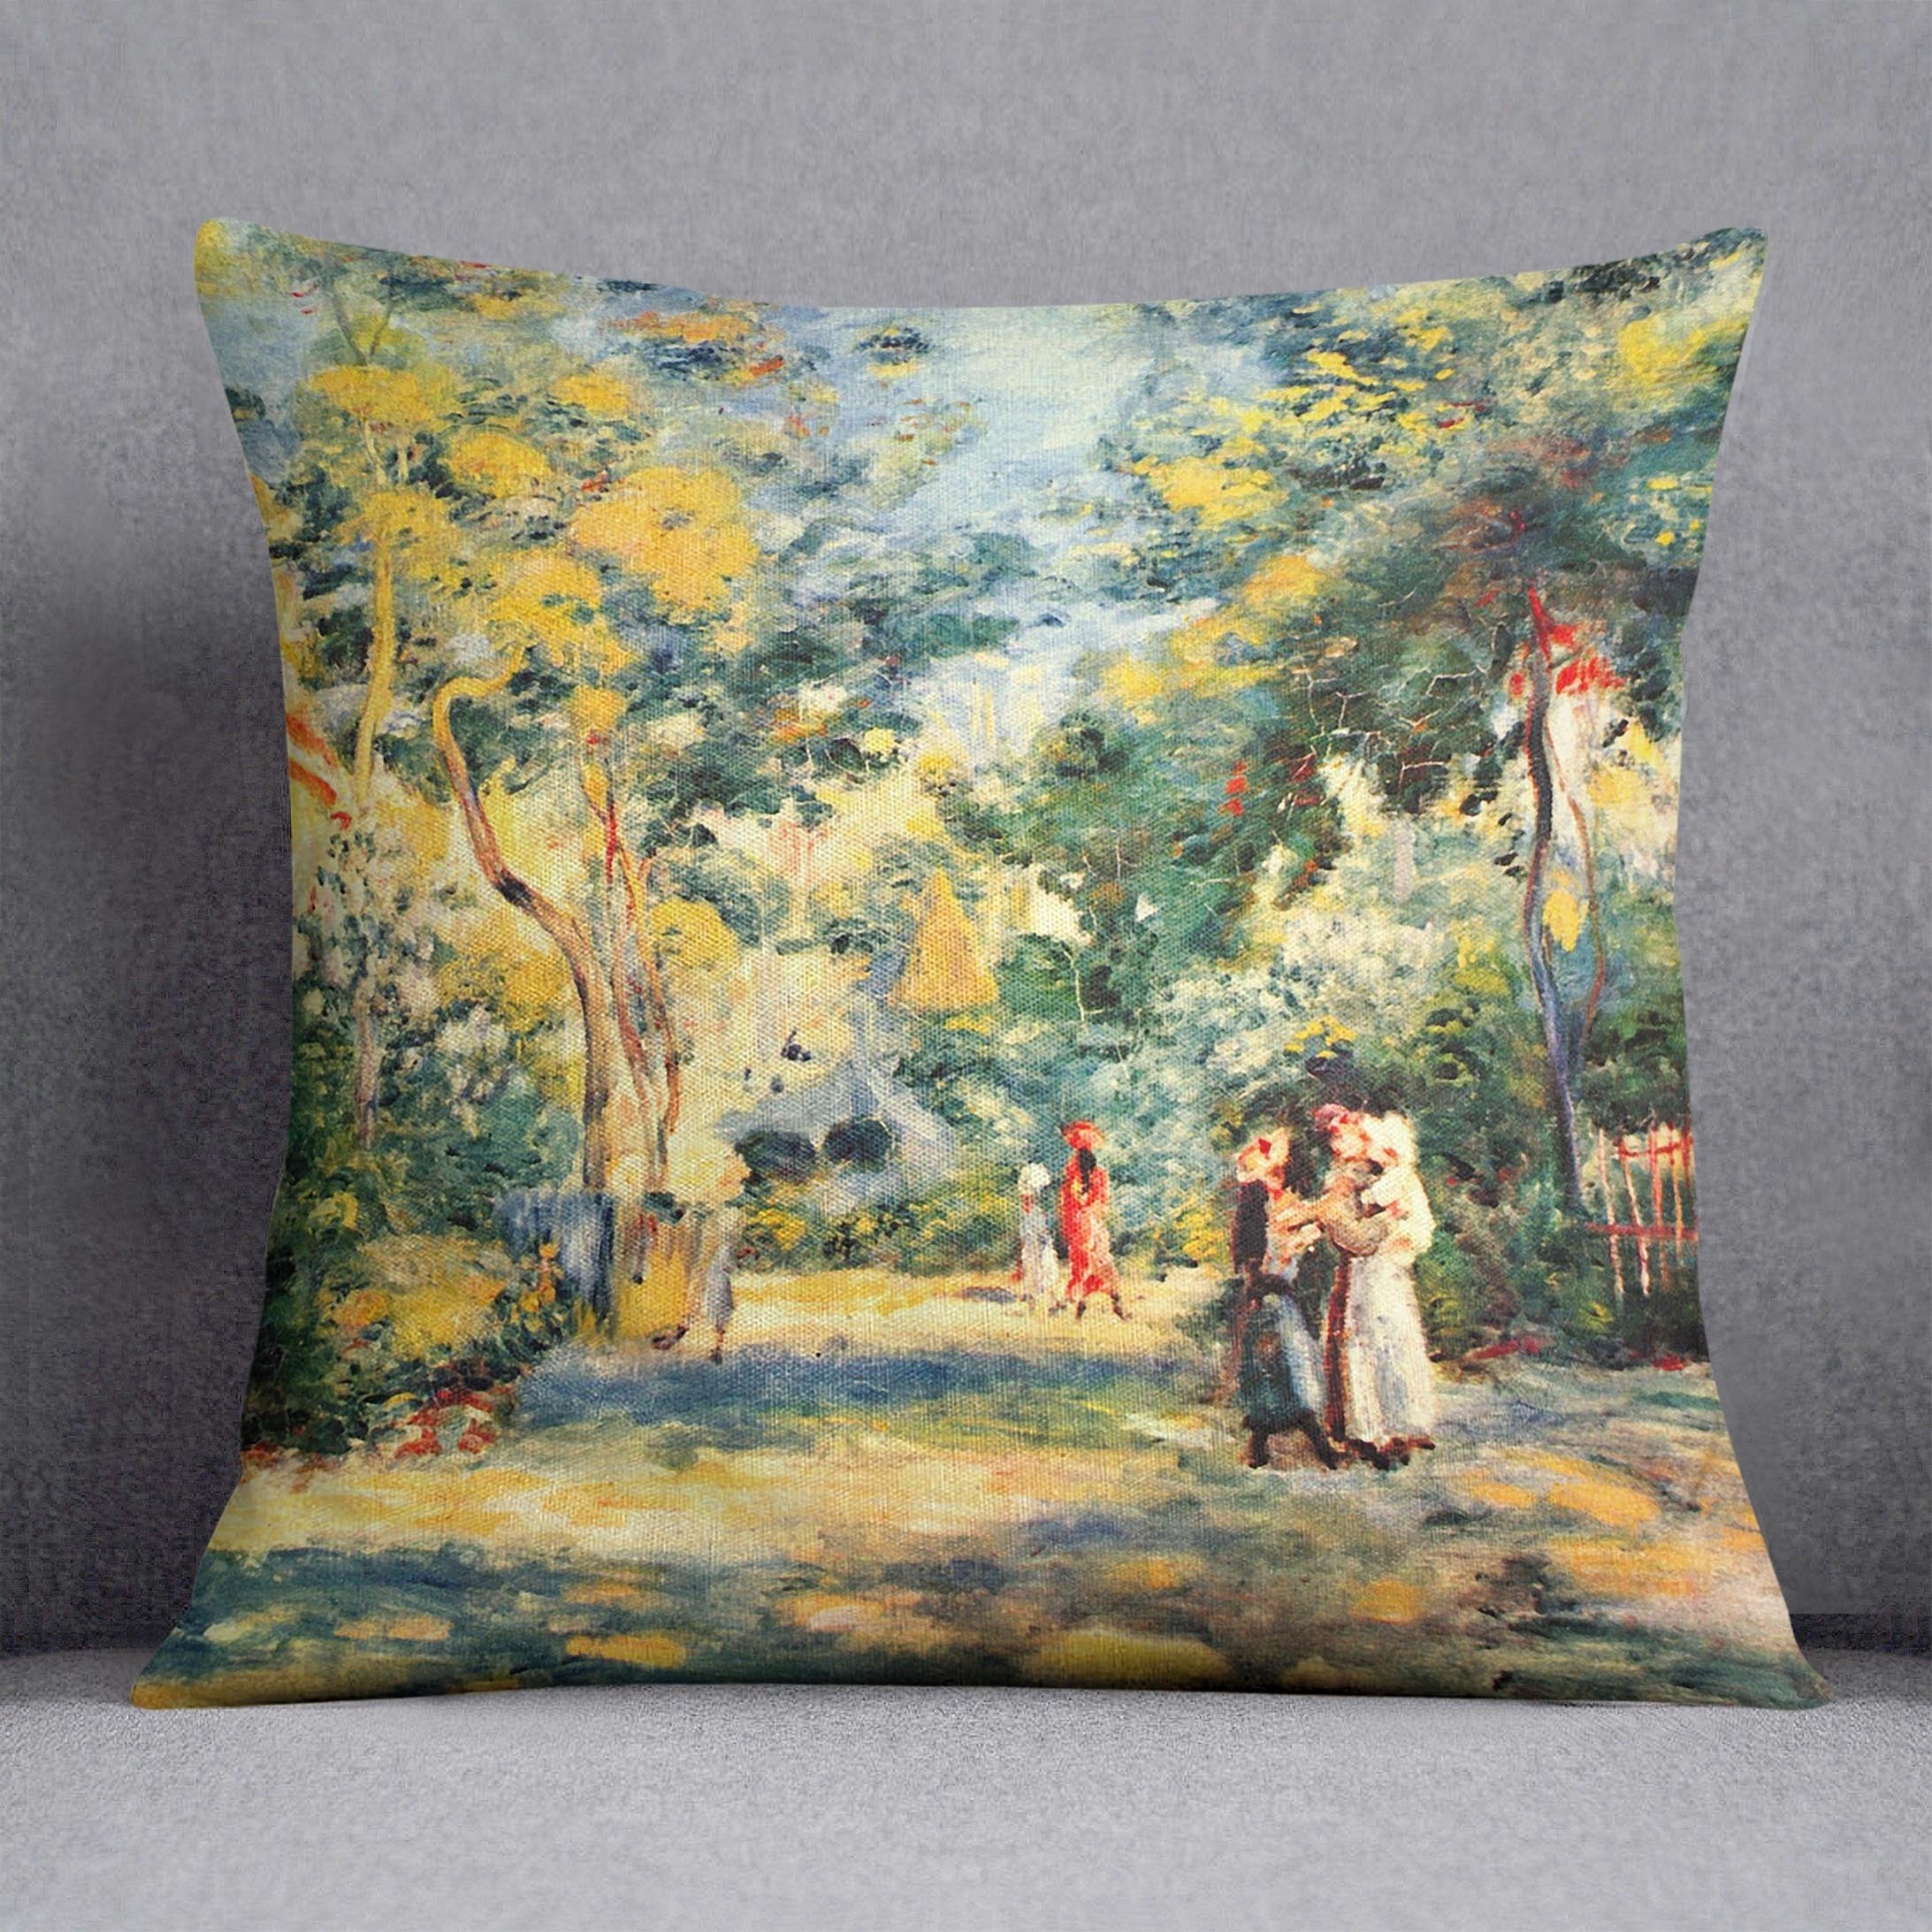 Figures in the garden by Renoir Throw Pillow